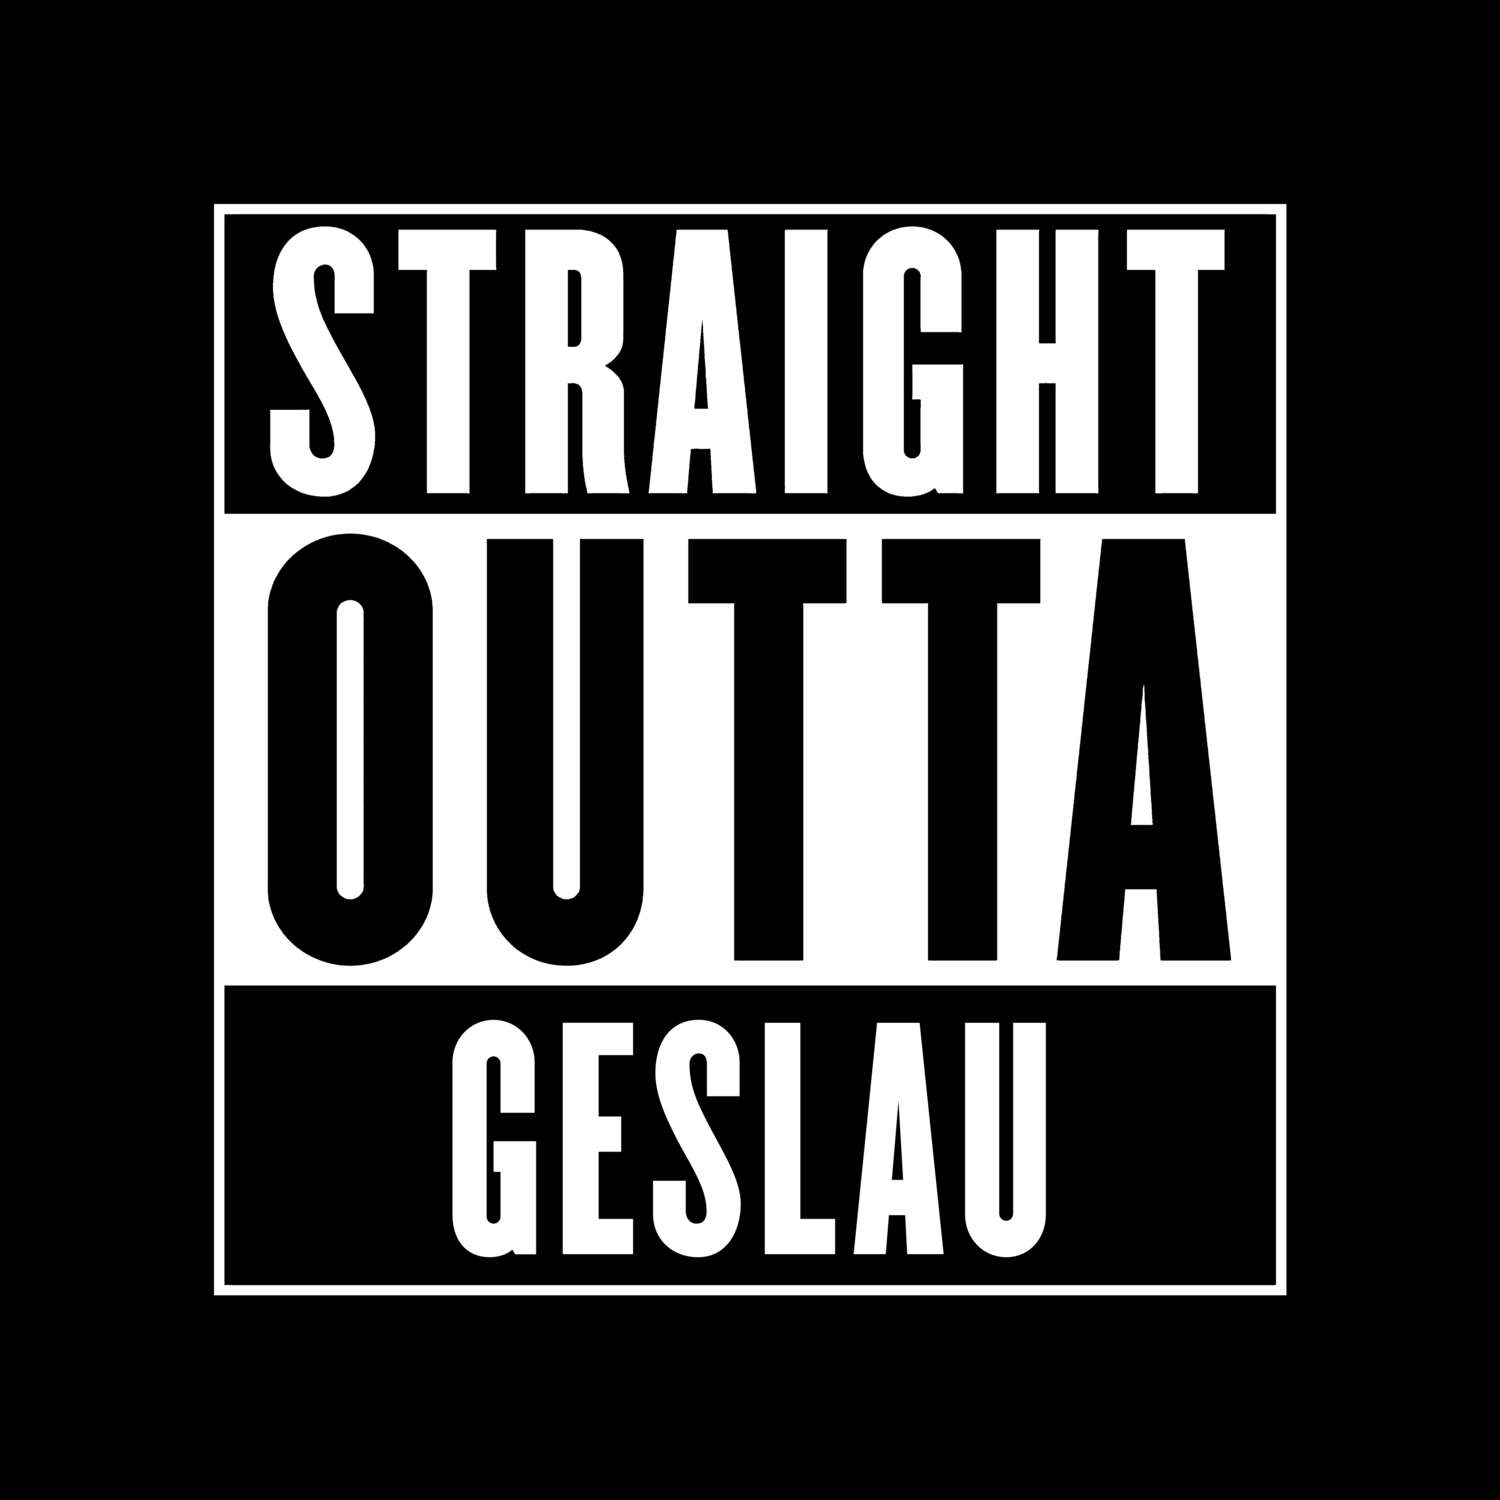 Geslau T-Shirt »Straight Outta«